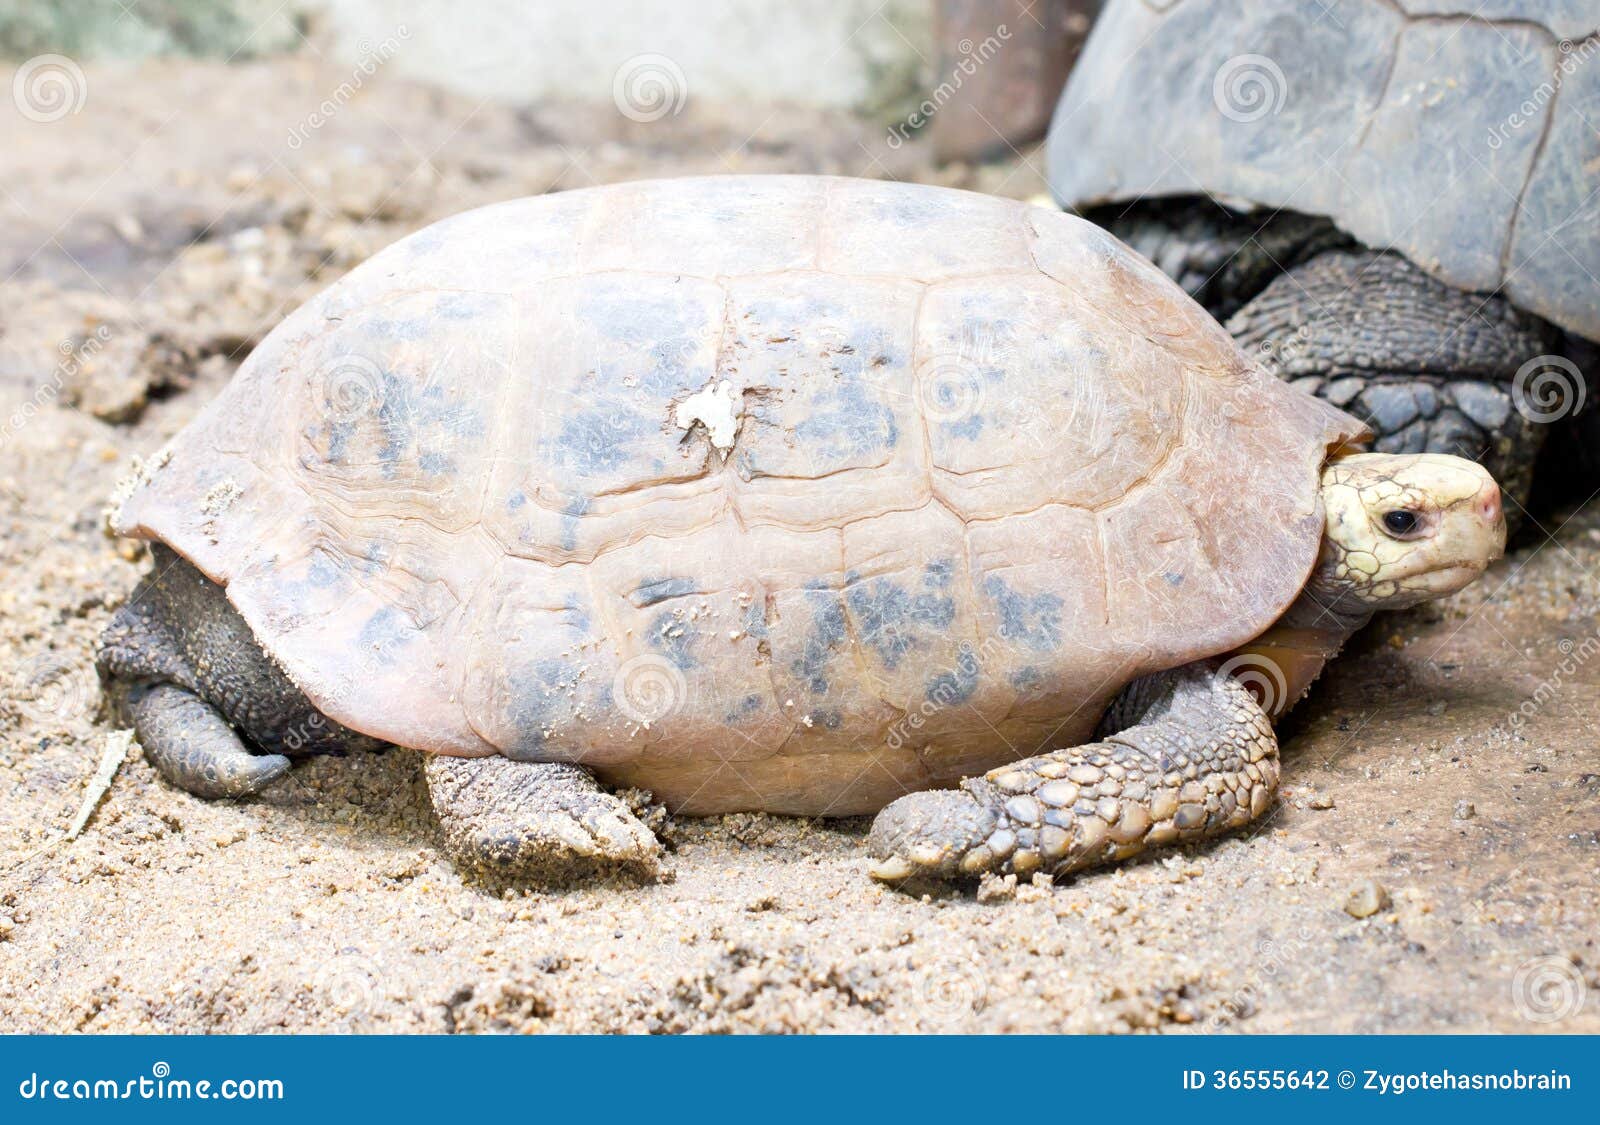 elongated tortoise turtle.